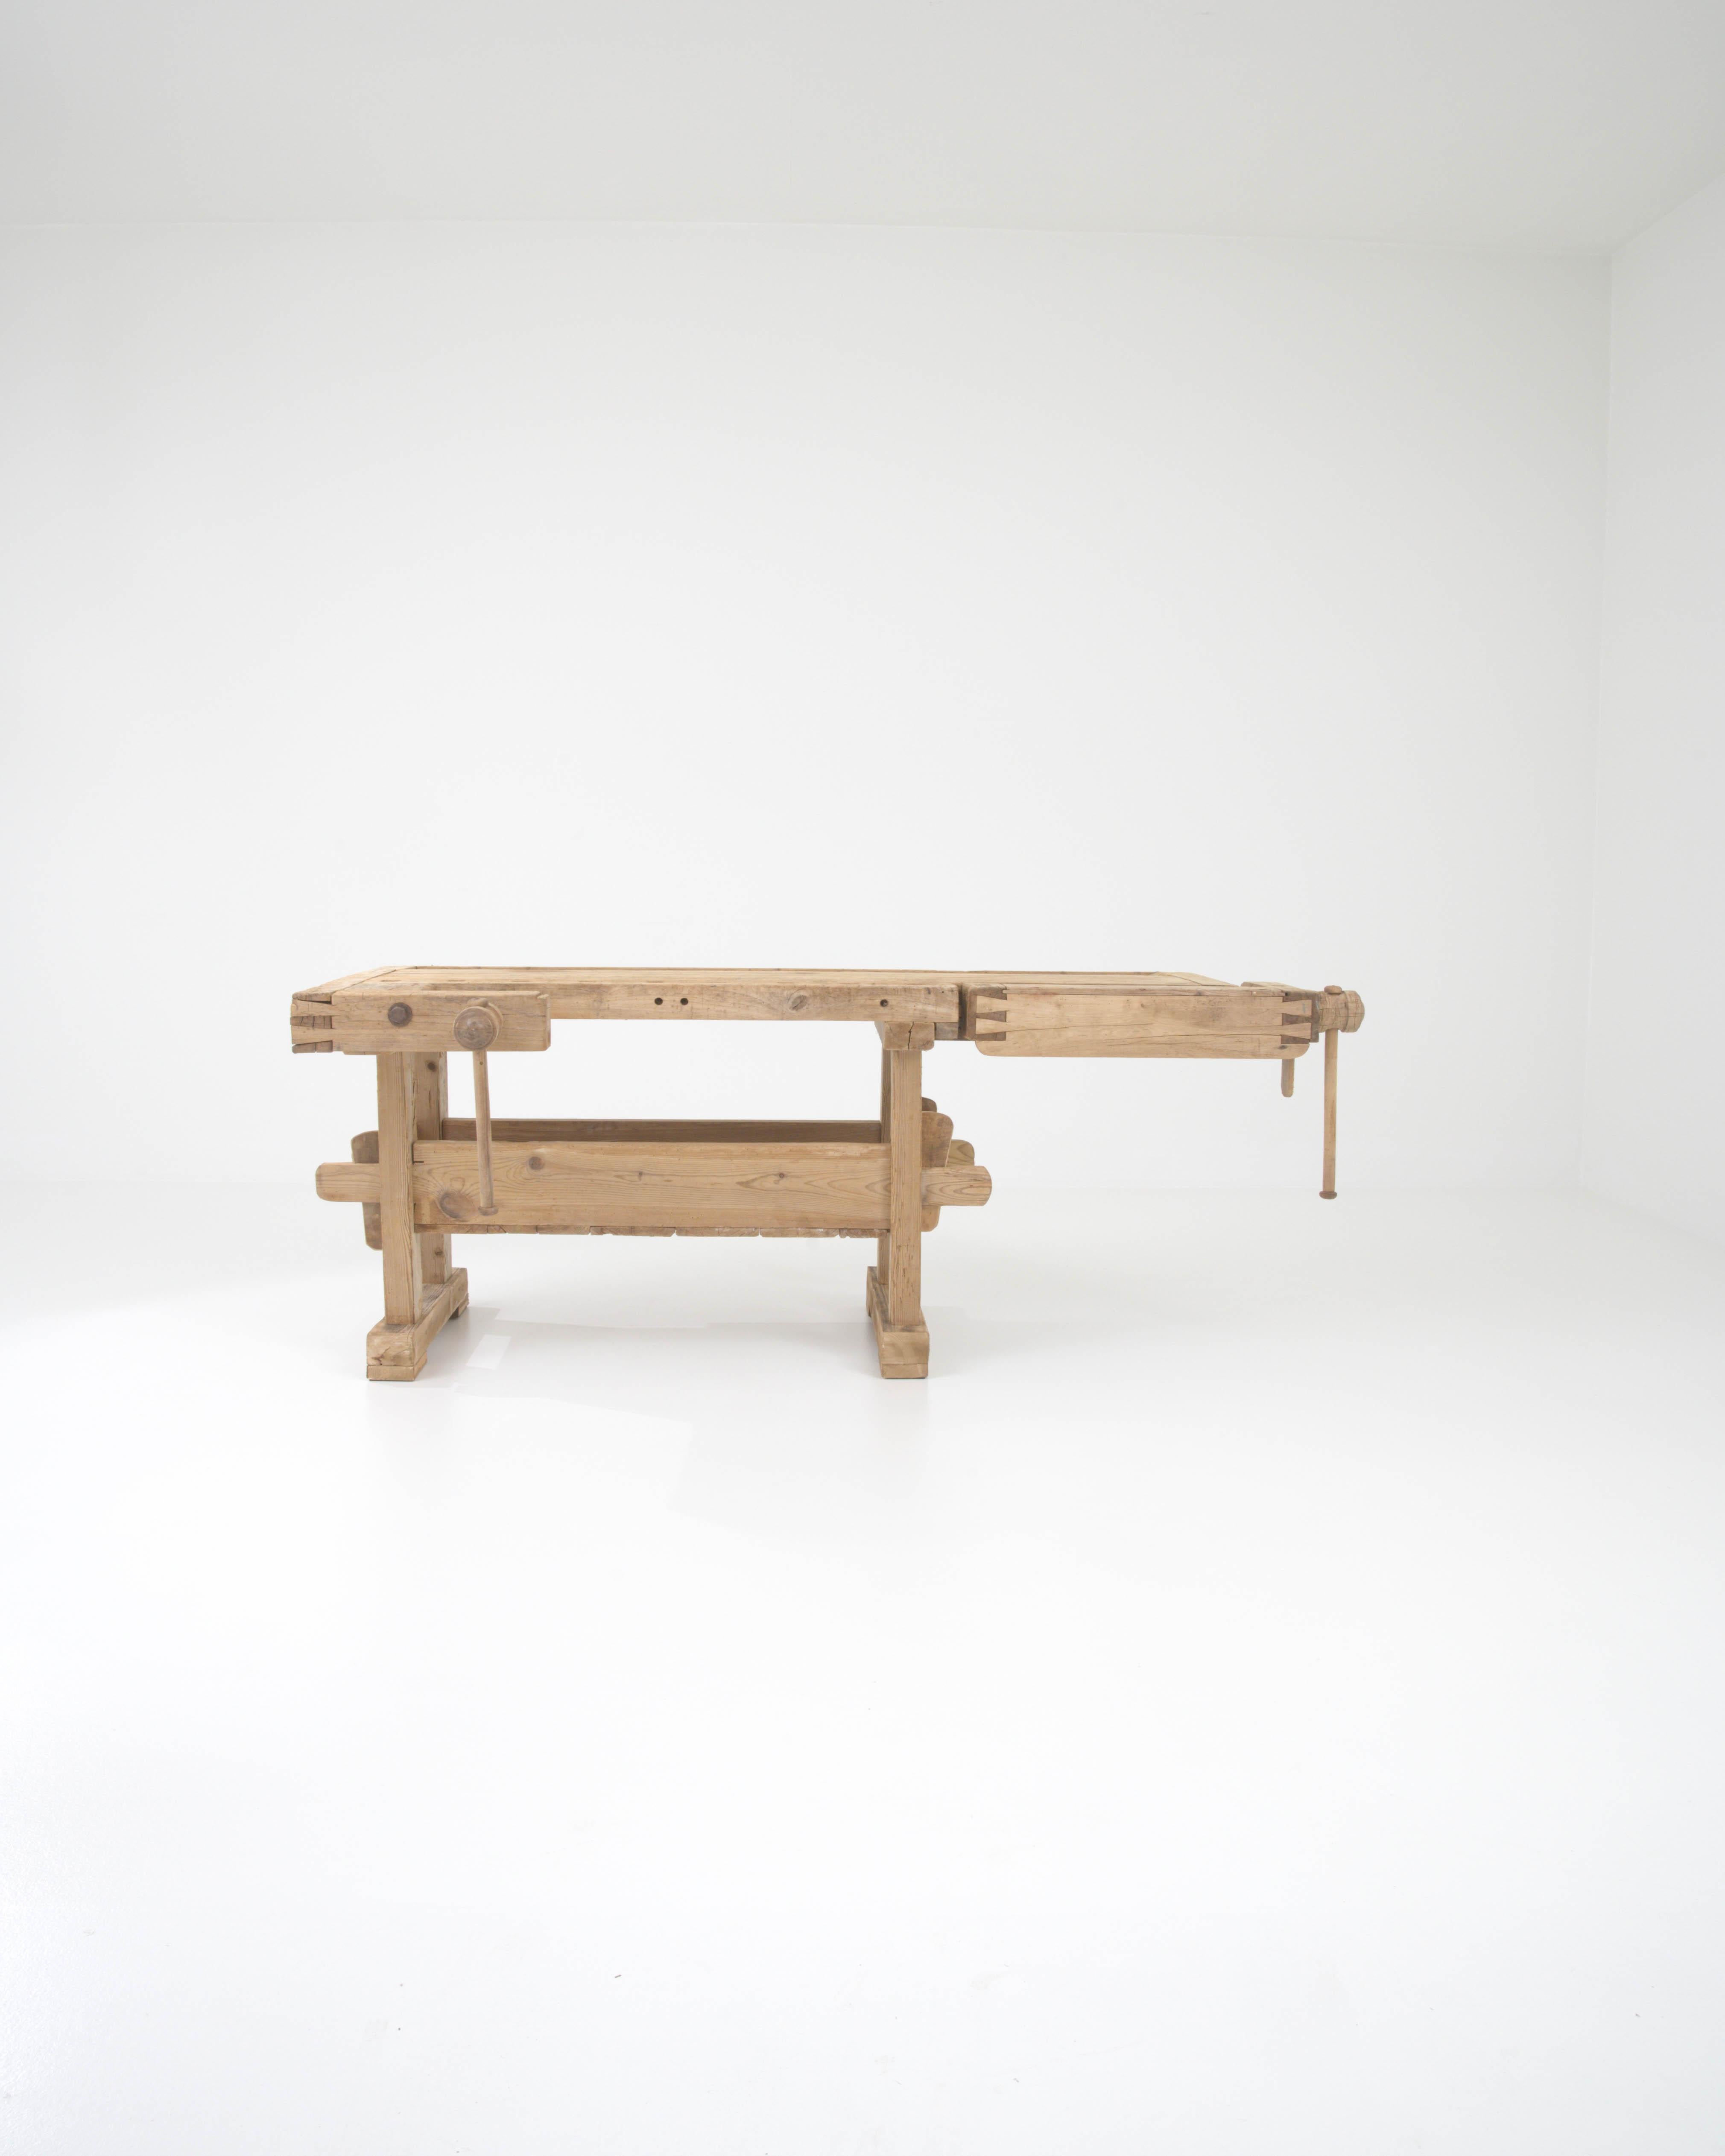 Mit seinem handwerklichen Design und seiner warmen, natürlichen Oberfläche setzt dieser Vintage-Holztisch einen eindrucksvollen industriellen Akzent. Dieses im 20. Jahrhundert in Belgien gebaute Stück wurde ursprünglich als Werkbank eines Schreiners